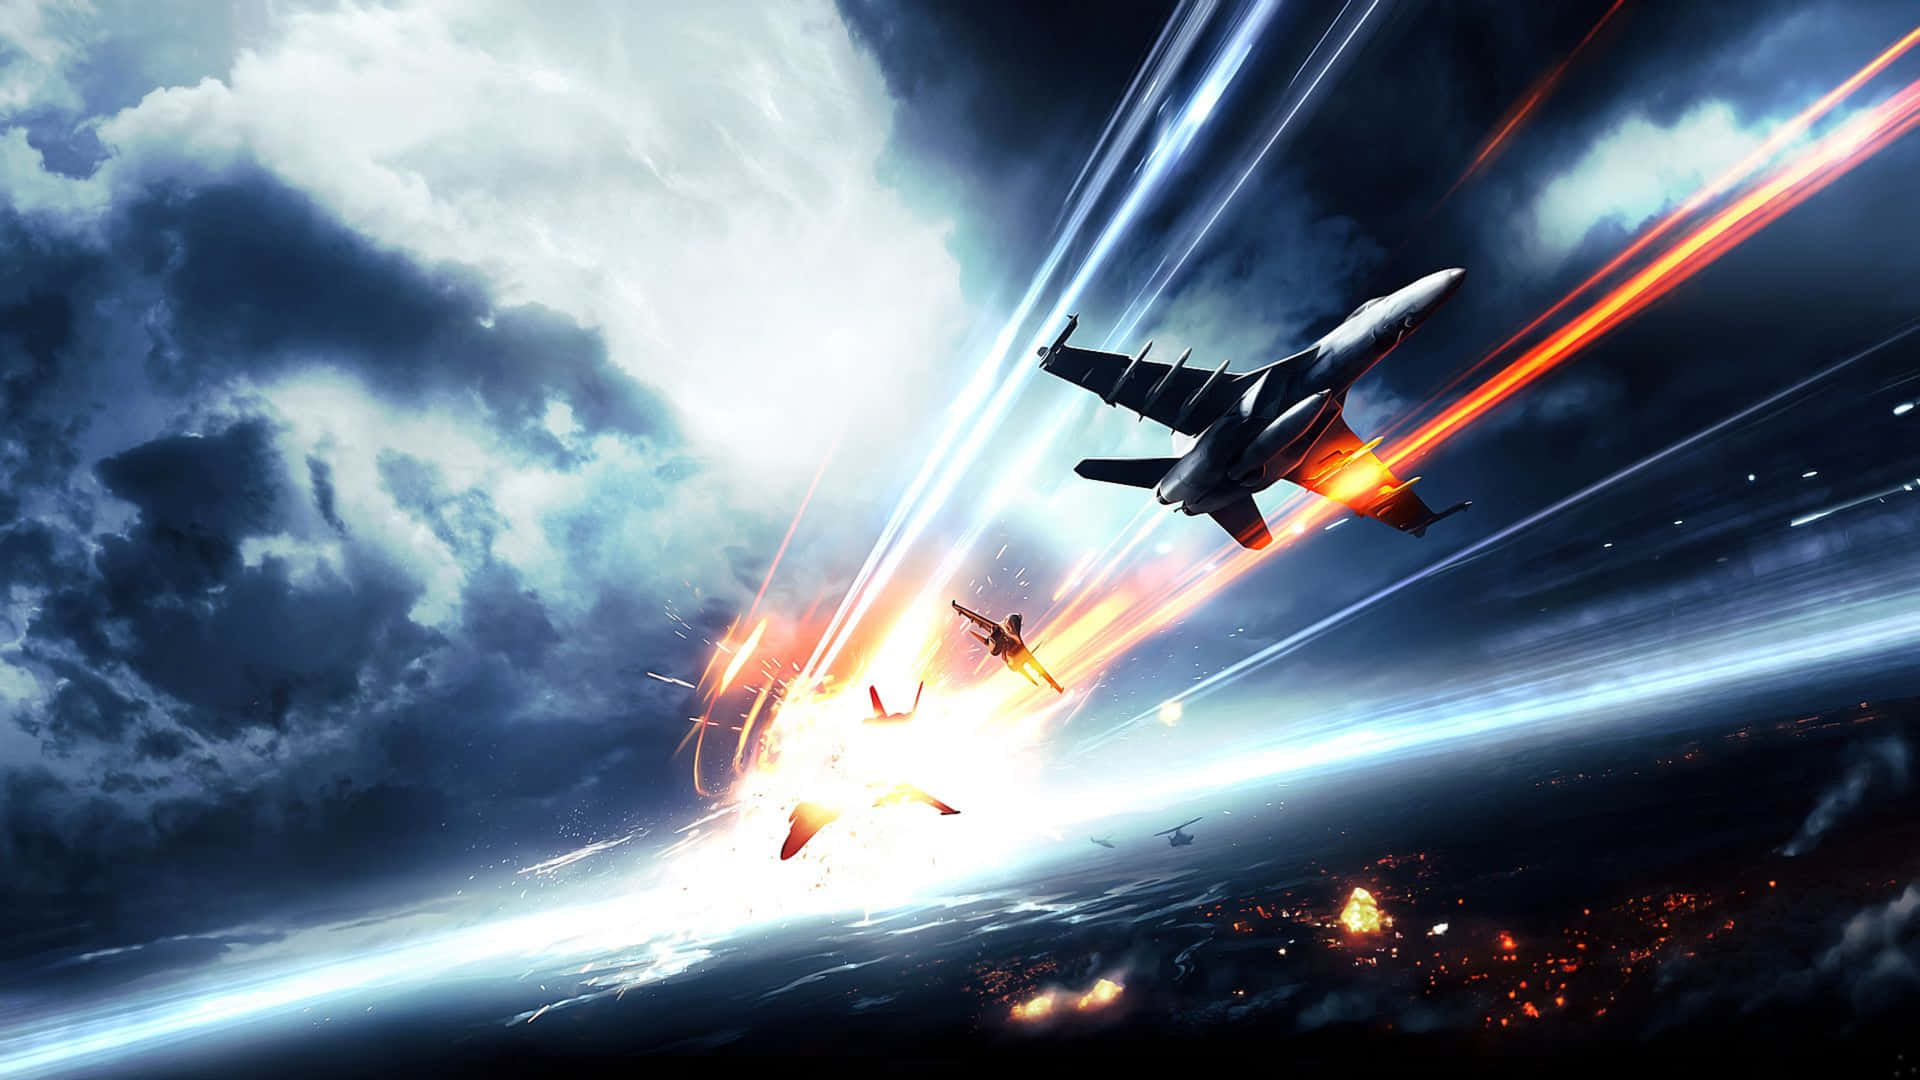 1440p Battlefield 1 Jet Fighter Background